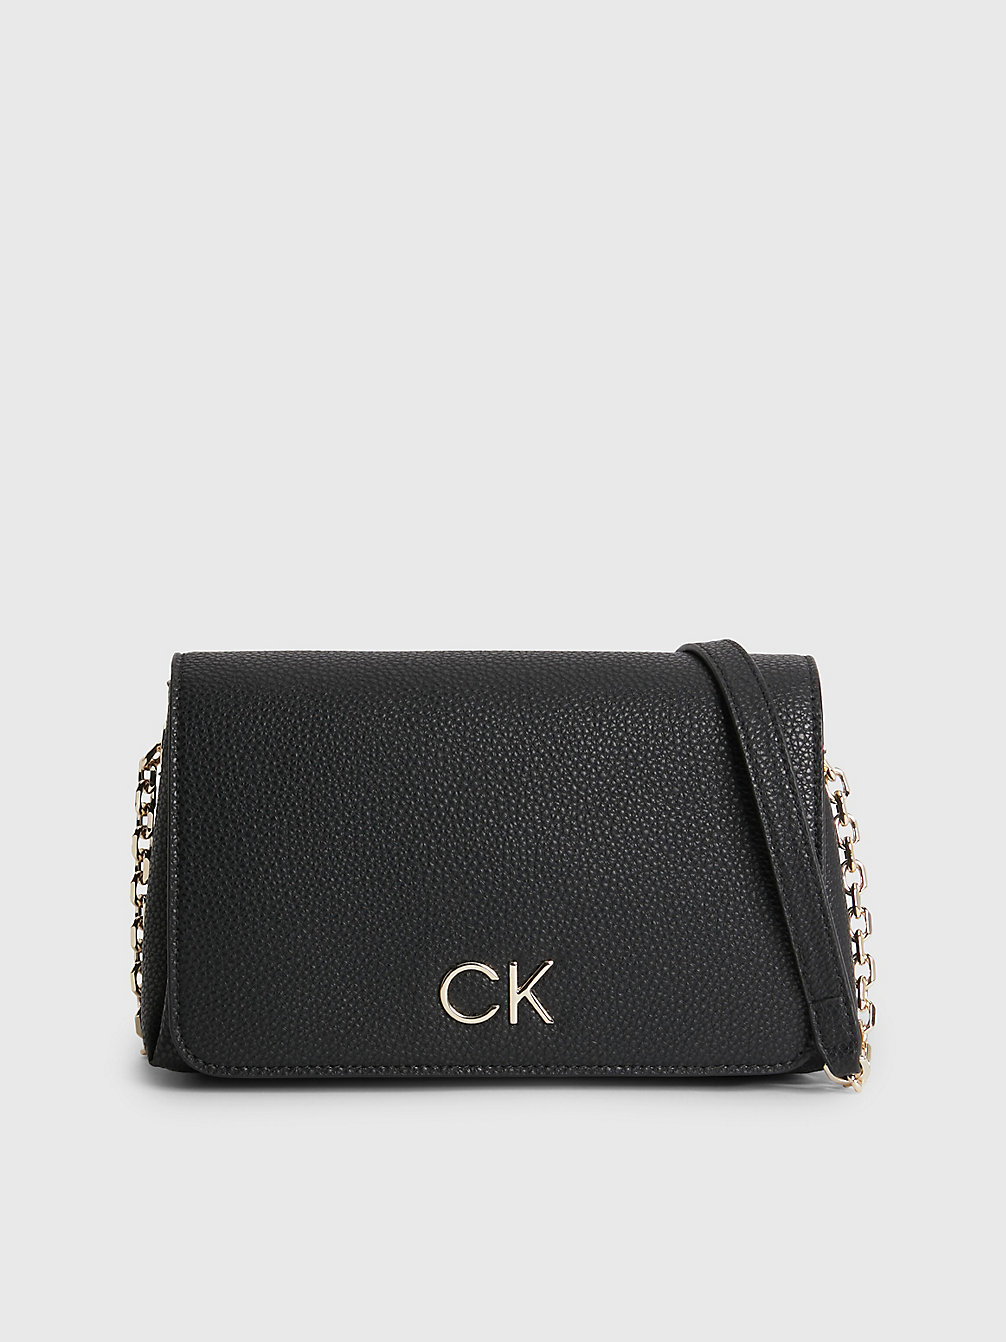 CK BLACK > Schultertasche Aus Recyceltem Material > undefined Damen - Calvin Klein